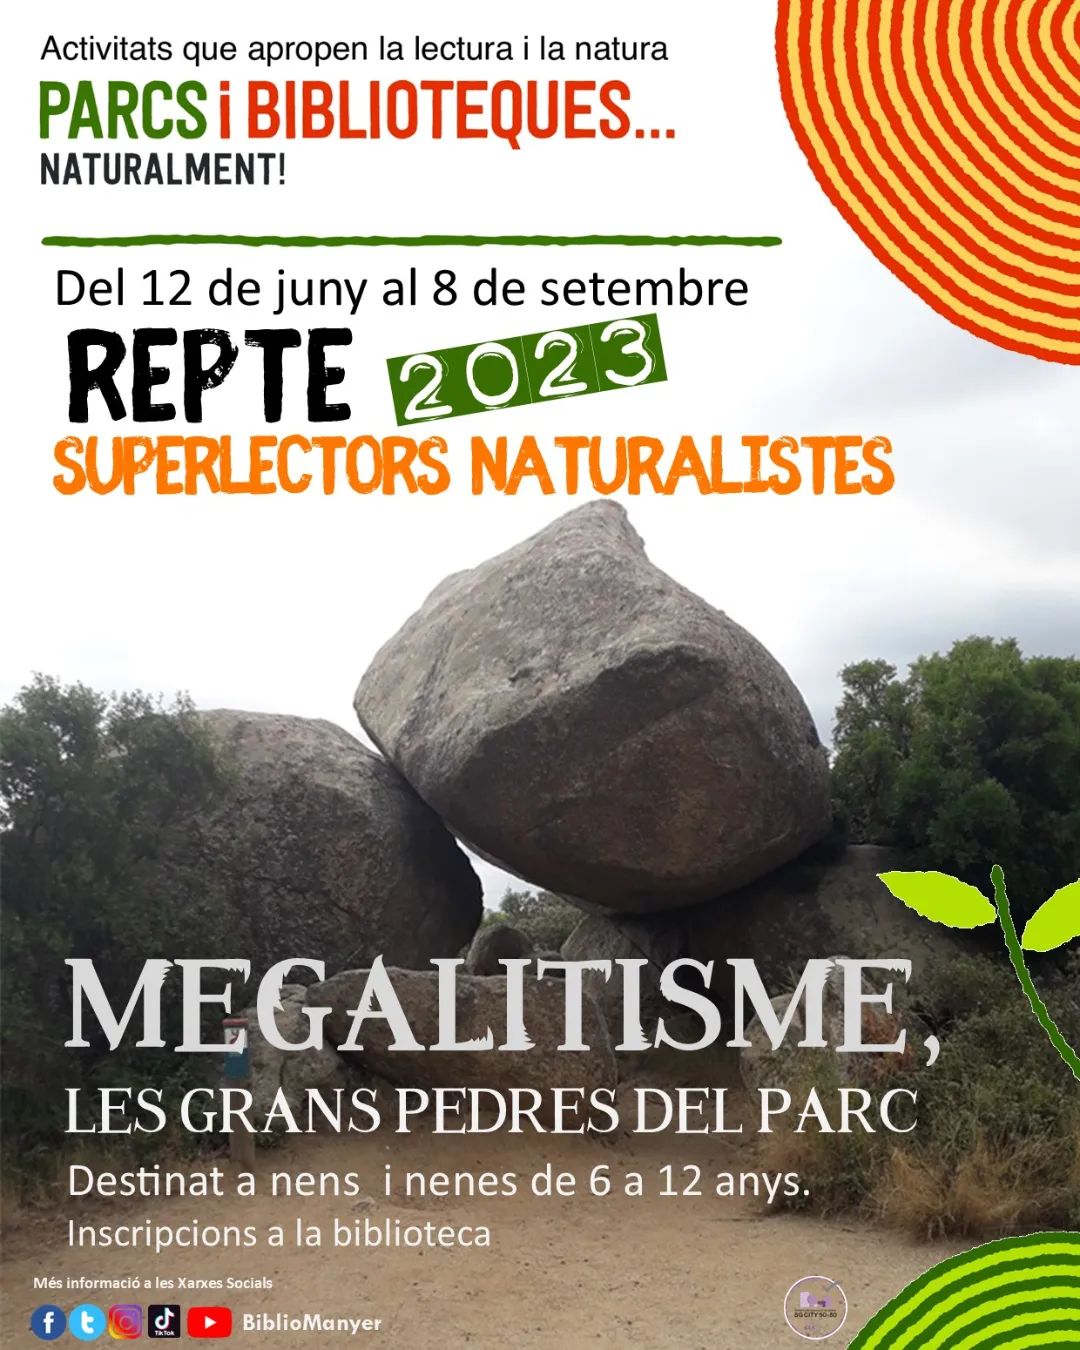 Repte 2023 Superlectors naturalistes